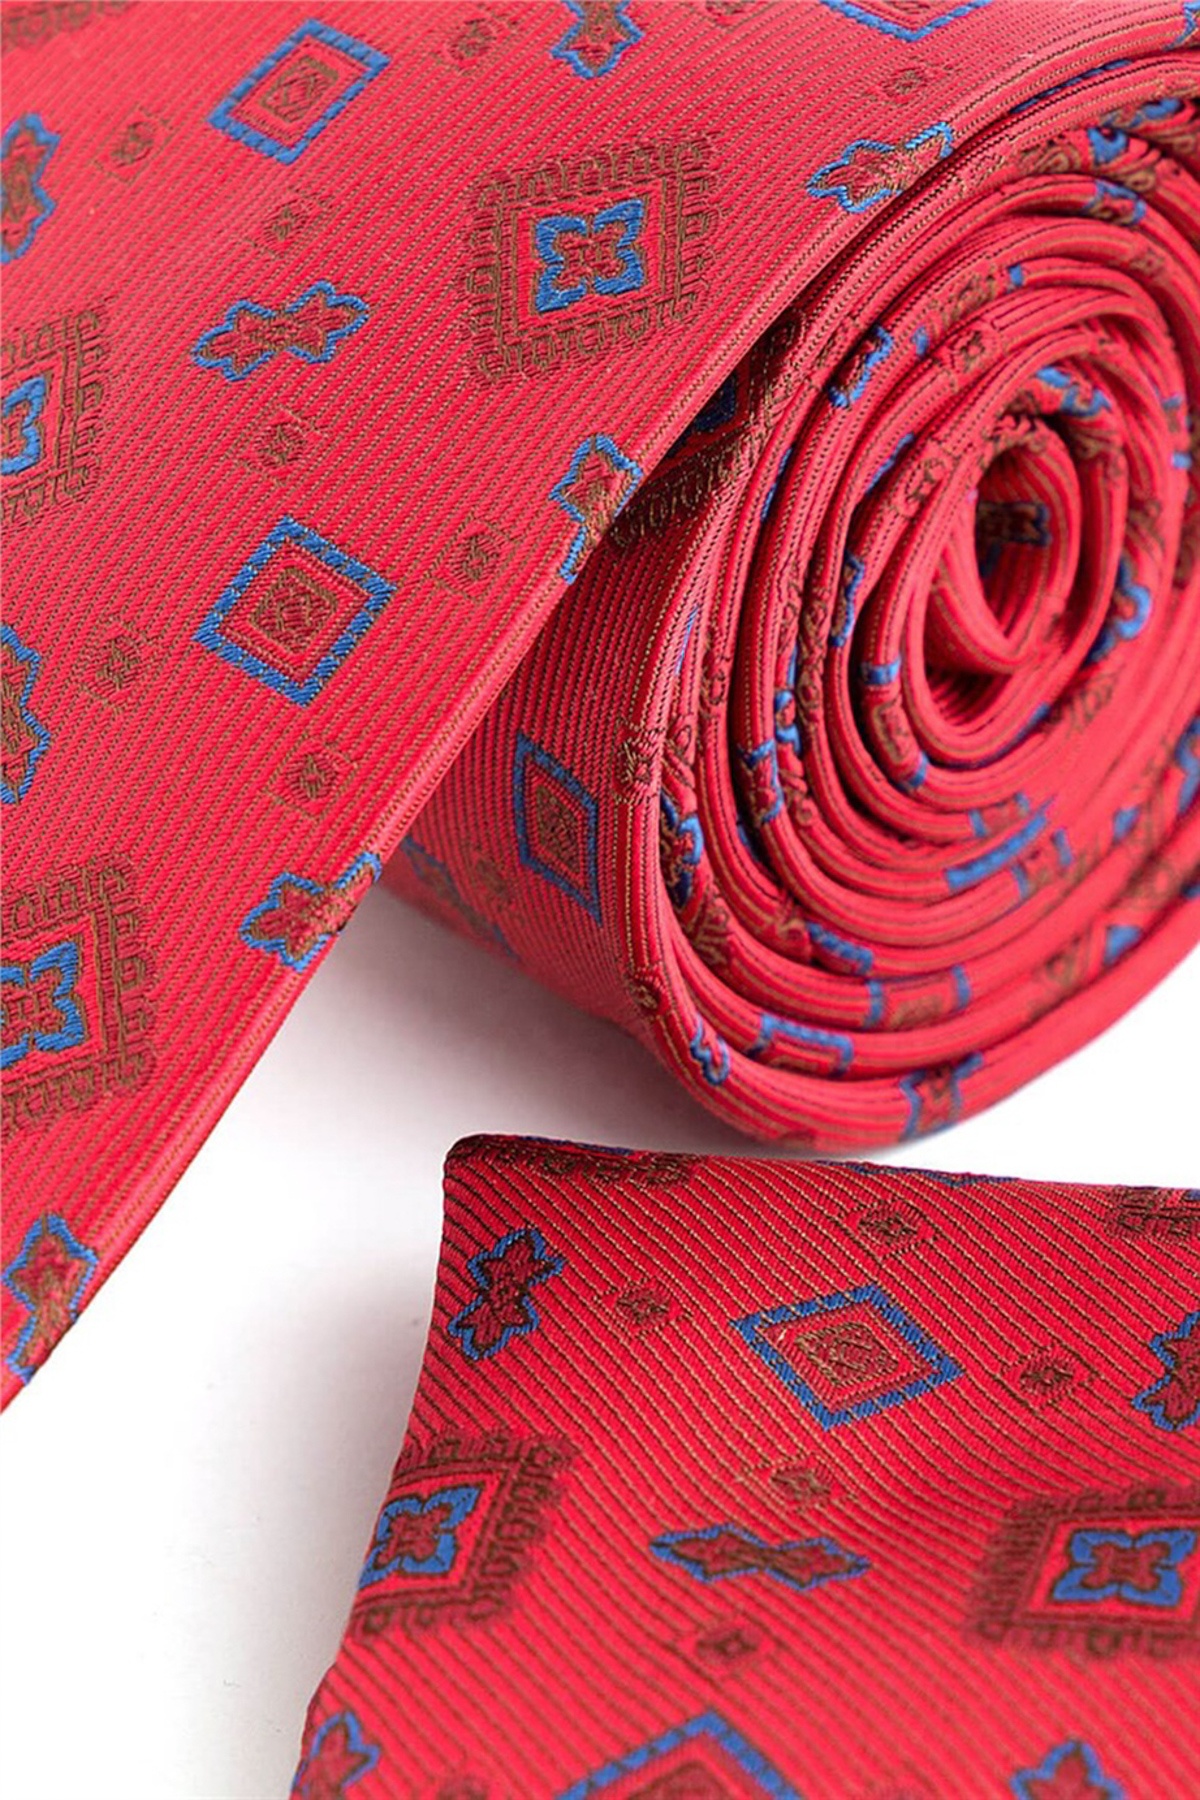 Piros színű kék mintás klasszikus nyakkendő